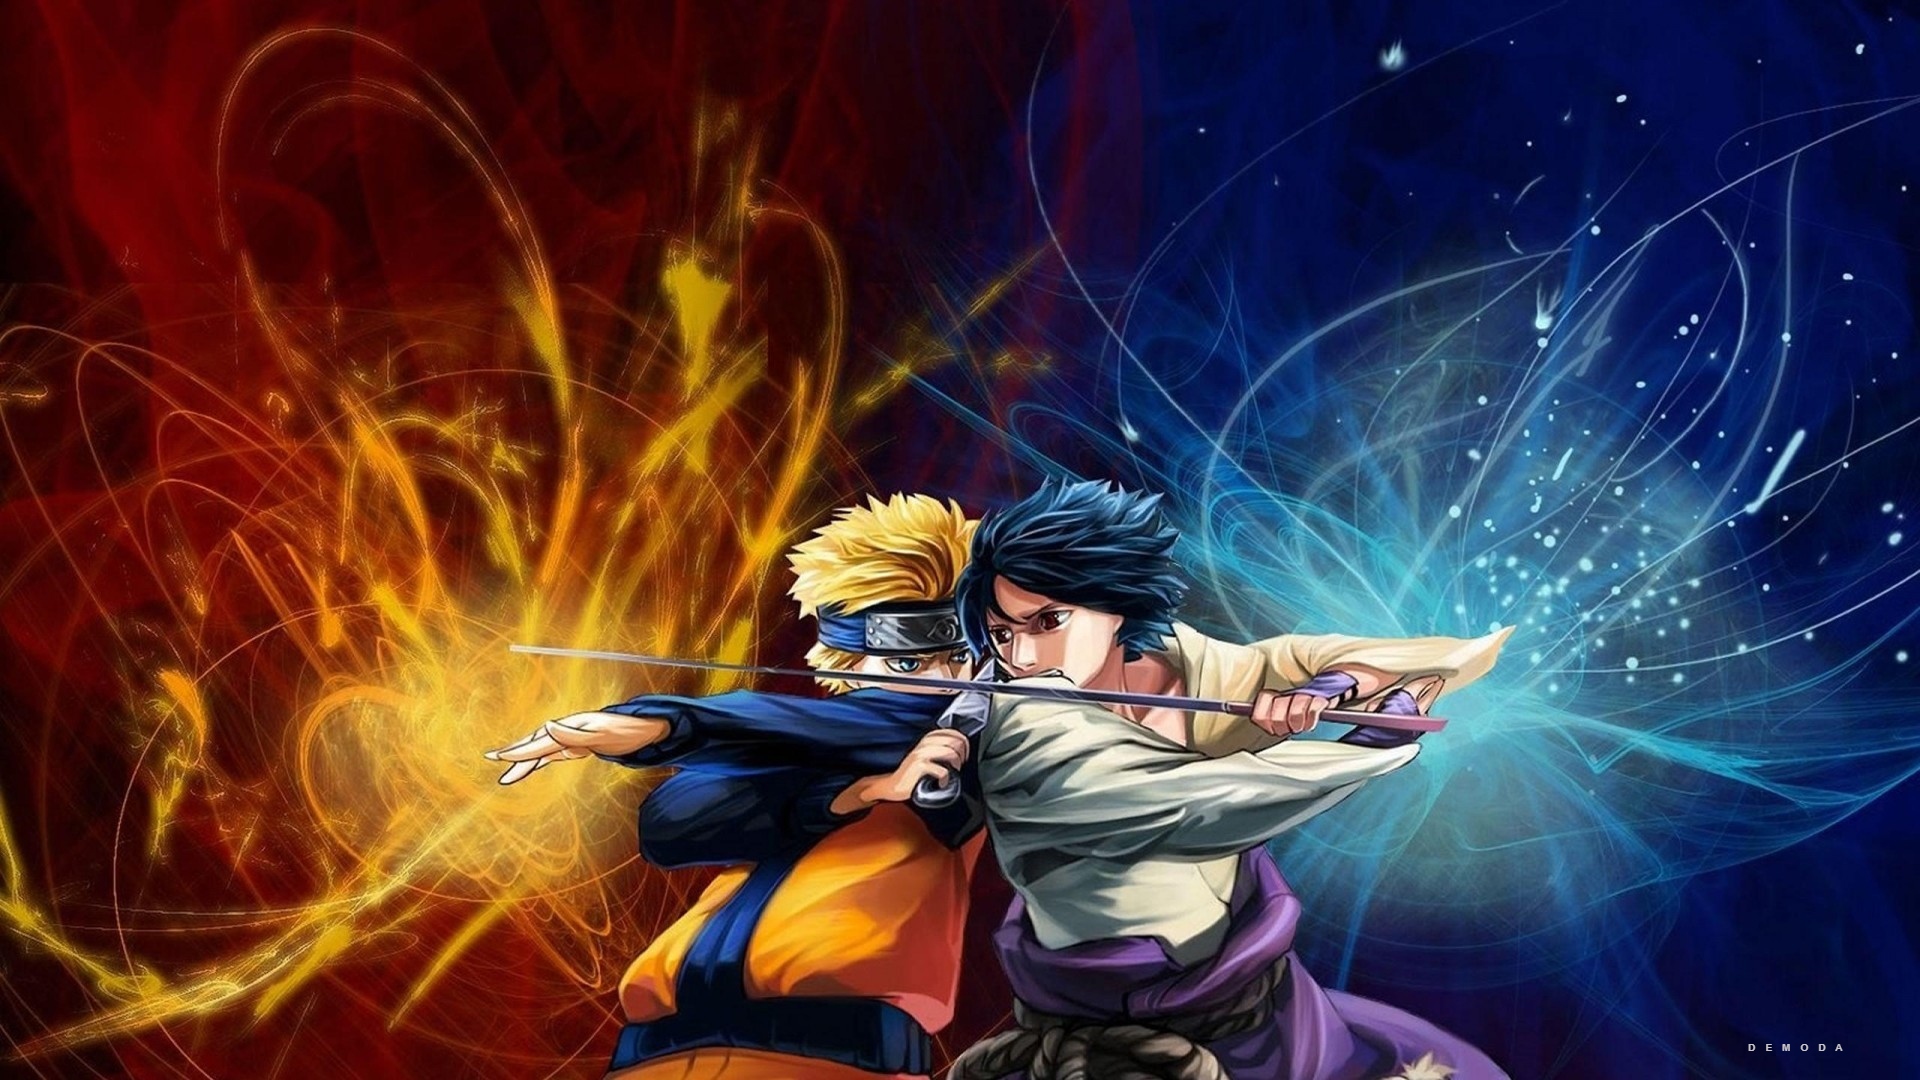 Hình Ảnh Naruto: Hình ảnh của Naruto cũng rất ấn tượng! Hãy tìm hiểu thêm về các nhân vật và cốt truyện trong sê-ri này bằng những hình ảnh tuyệt đẹp này. Naruto, Sakura, Sasuke, Kakashi và nhiều nhân vật khác đang chờ đón bạn trong thế giới của họ.